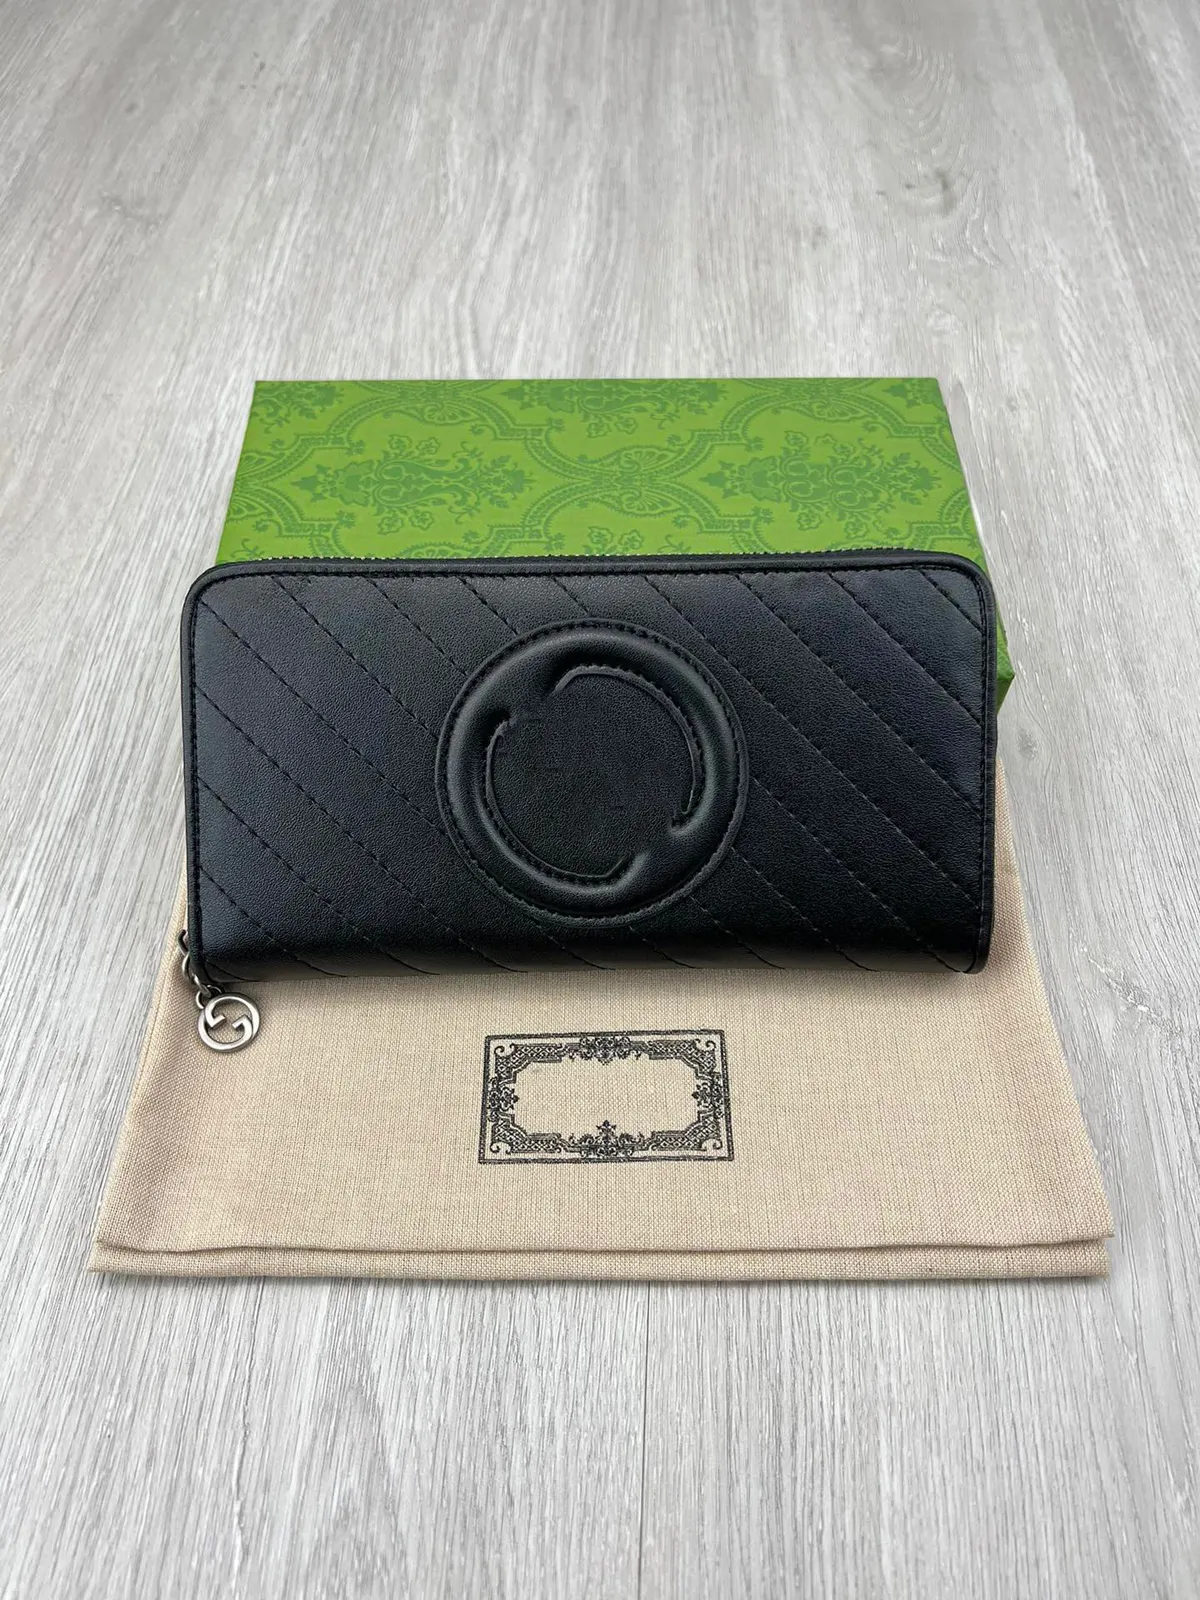 Long Wallet Black Color Designer Fashion Brand Letter Logo Logo Zipper Wallet Men Damer Purse Fashion Card Holder Pocket Long Zipper Bag